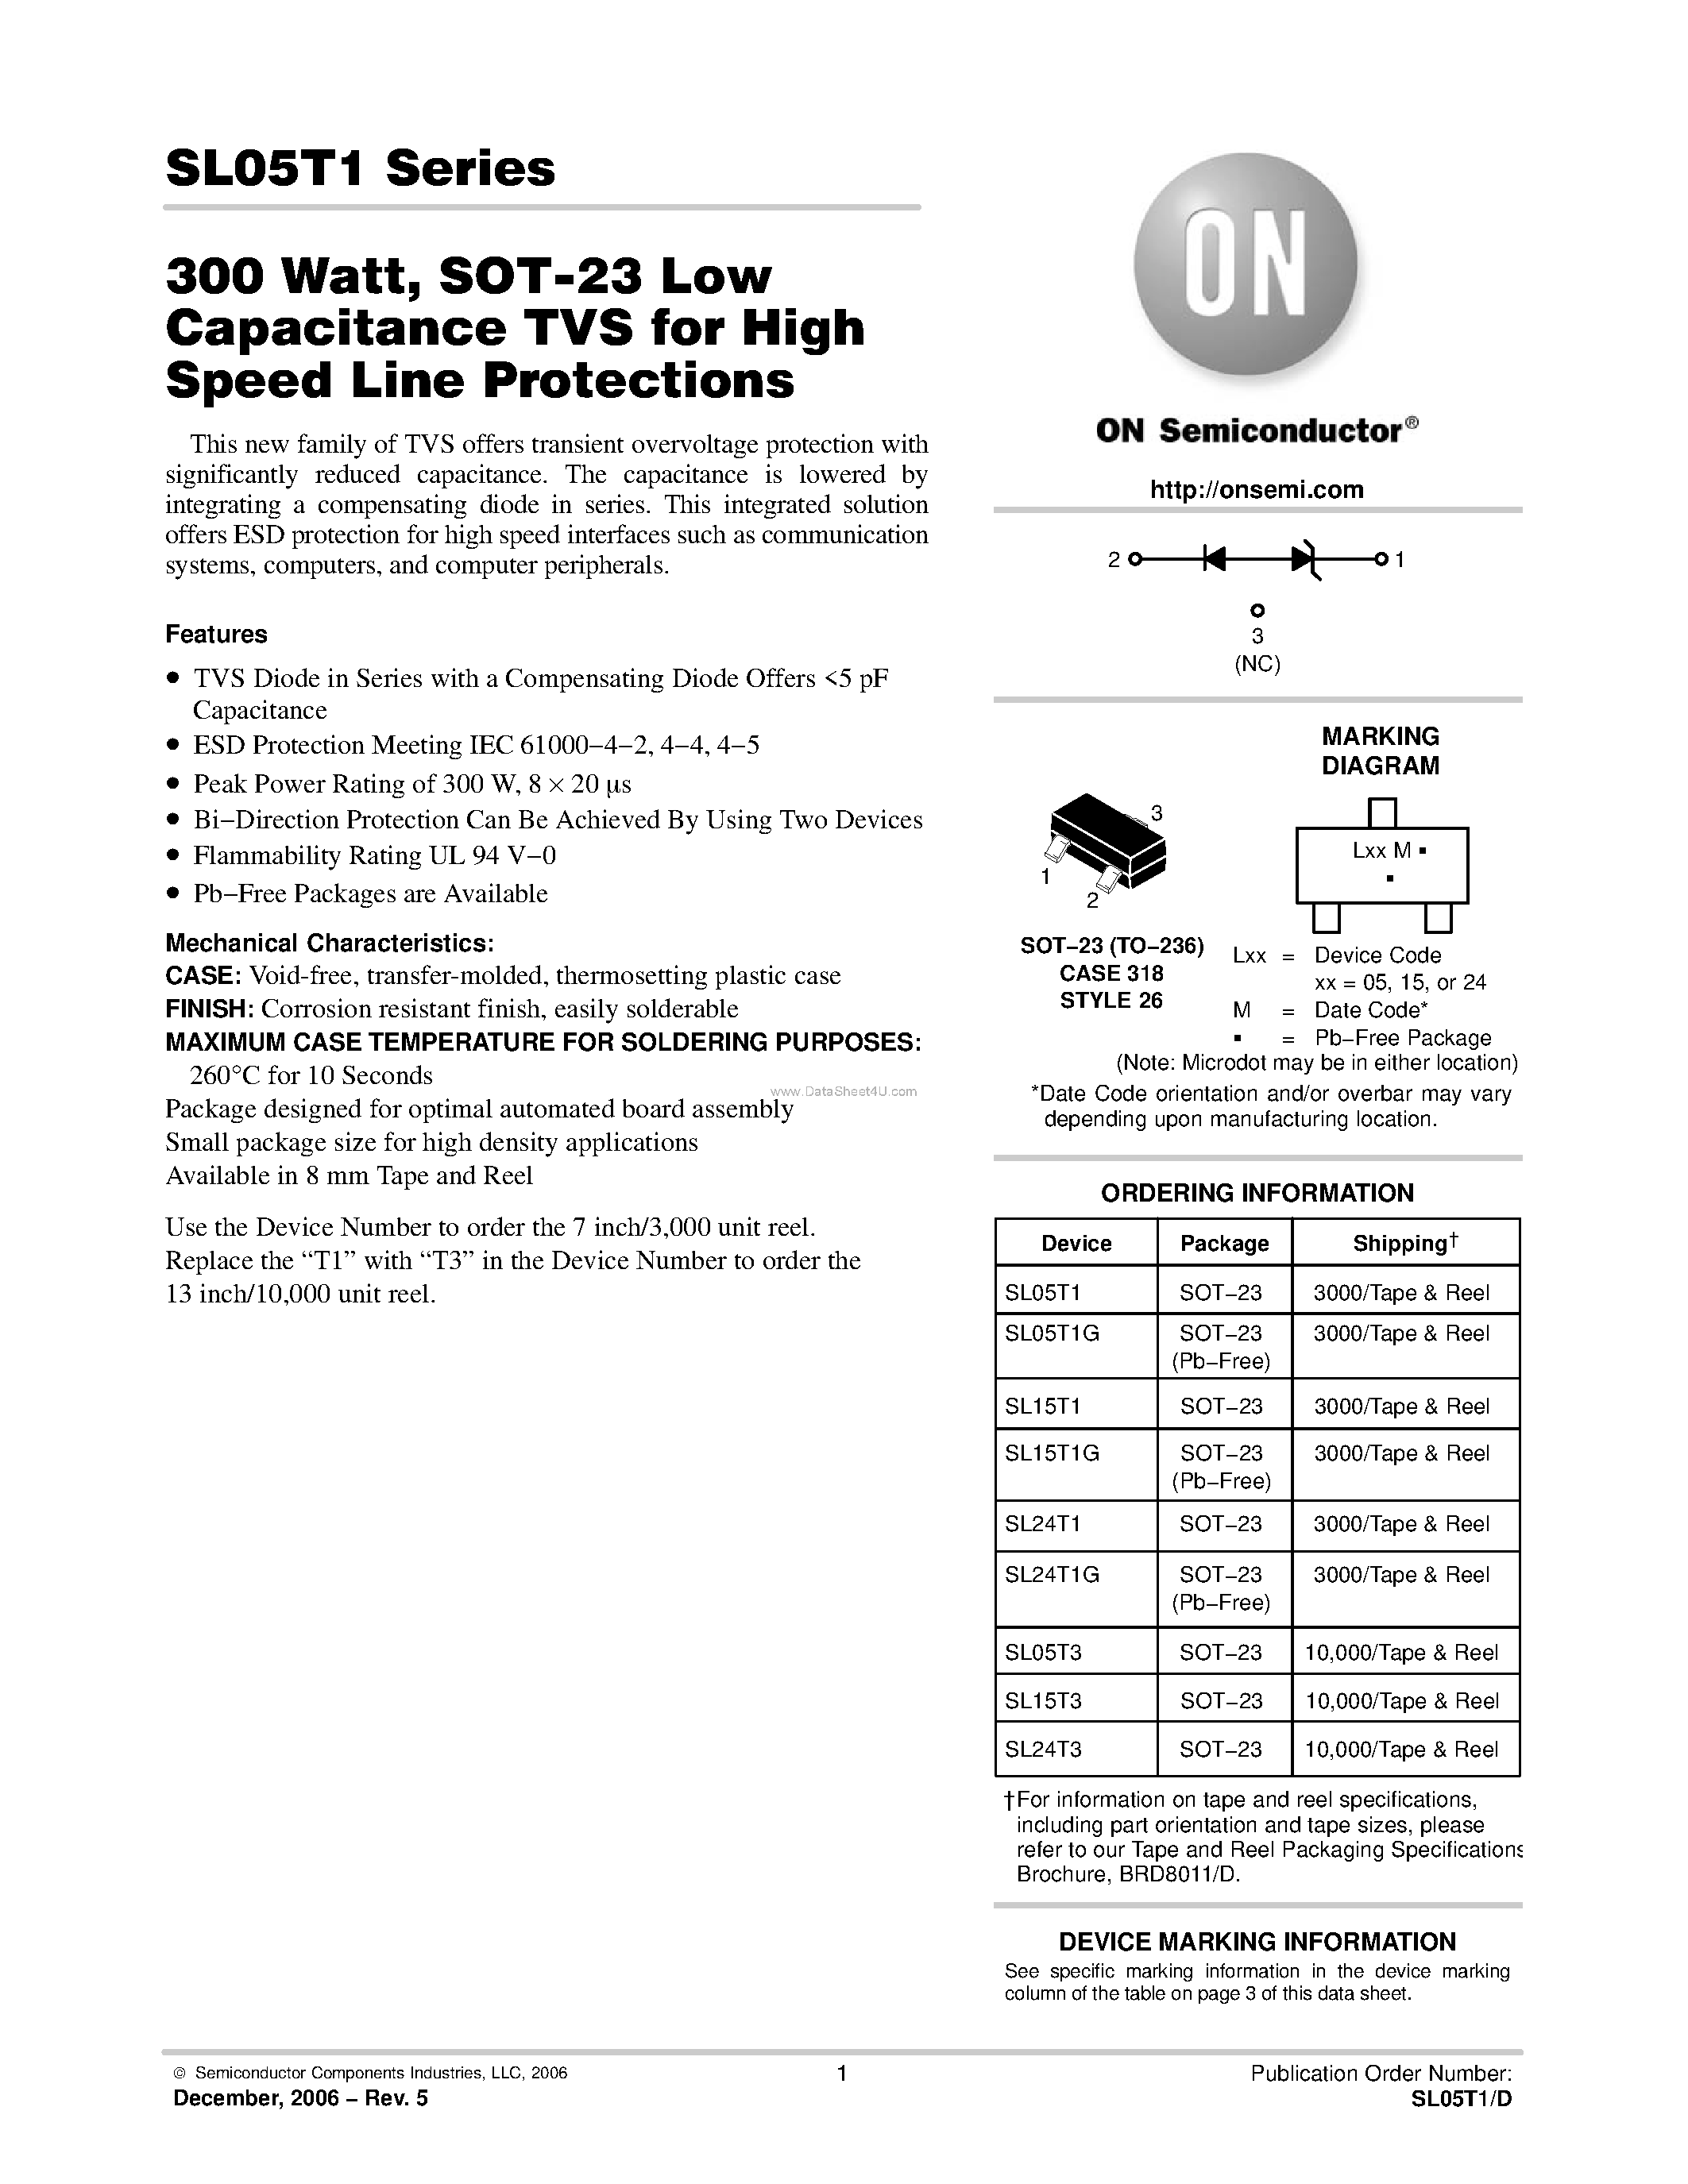 Datasheet SL24T1 - SOT-23 Low Capacitance TVS page 1